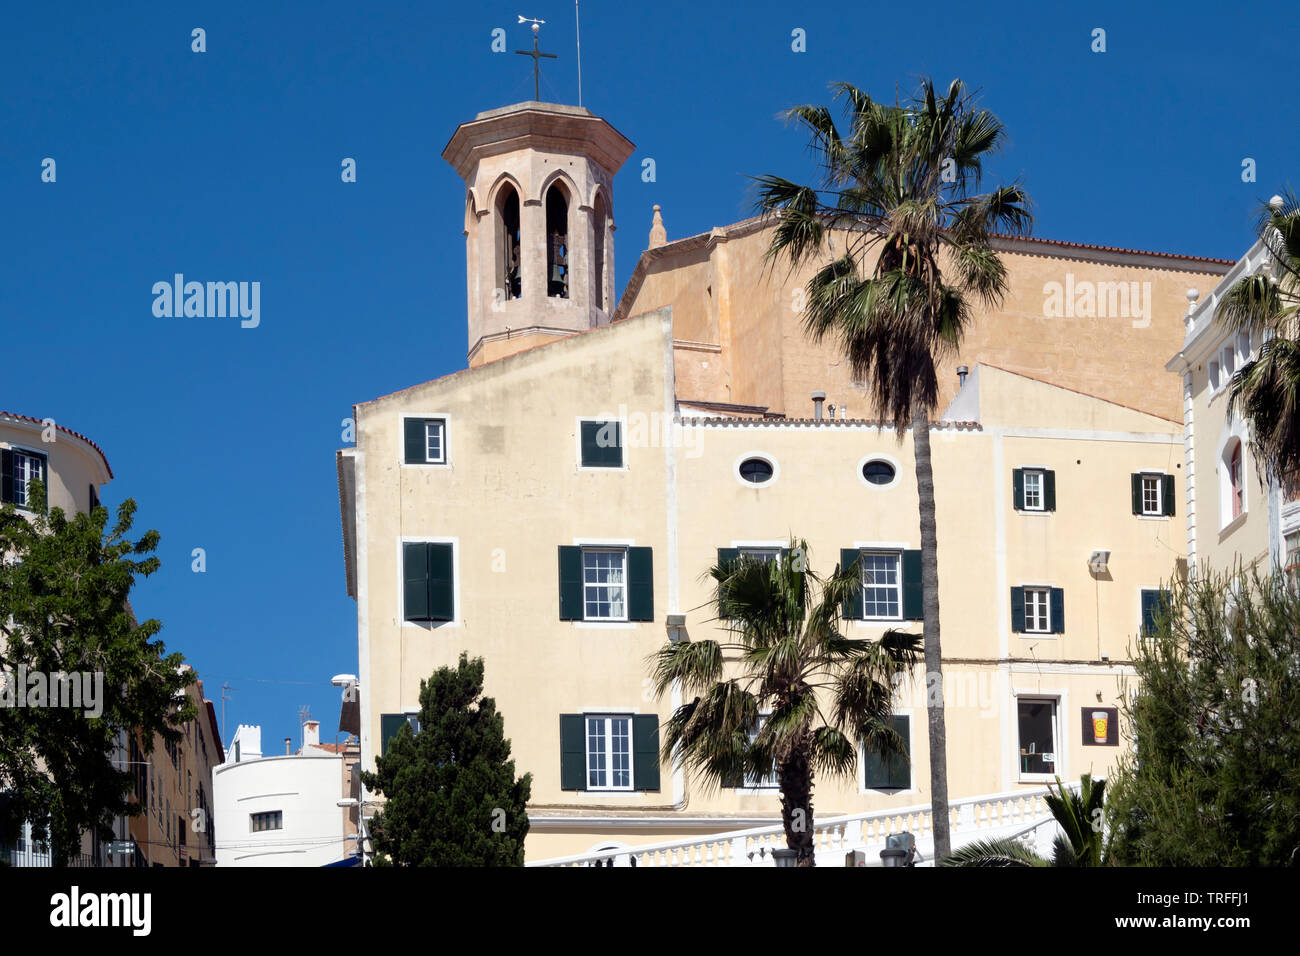 Santa Maria de Maó, Mahon, Capital of Menorca, Balearic Islands, Spain Stock Photo